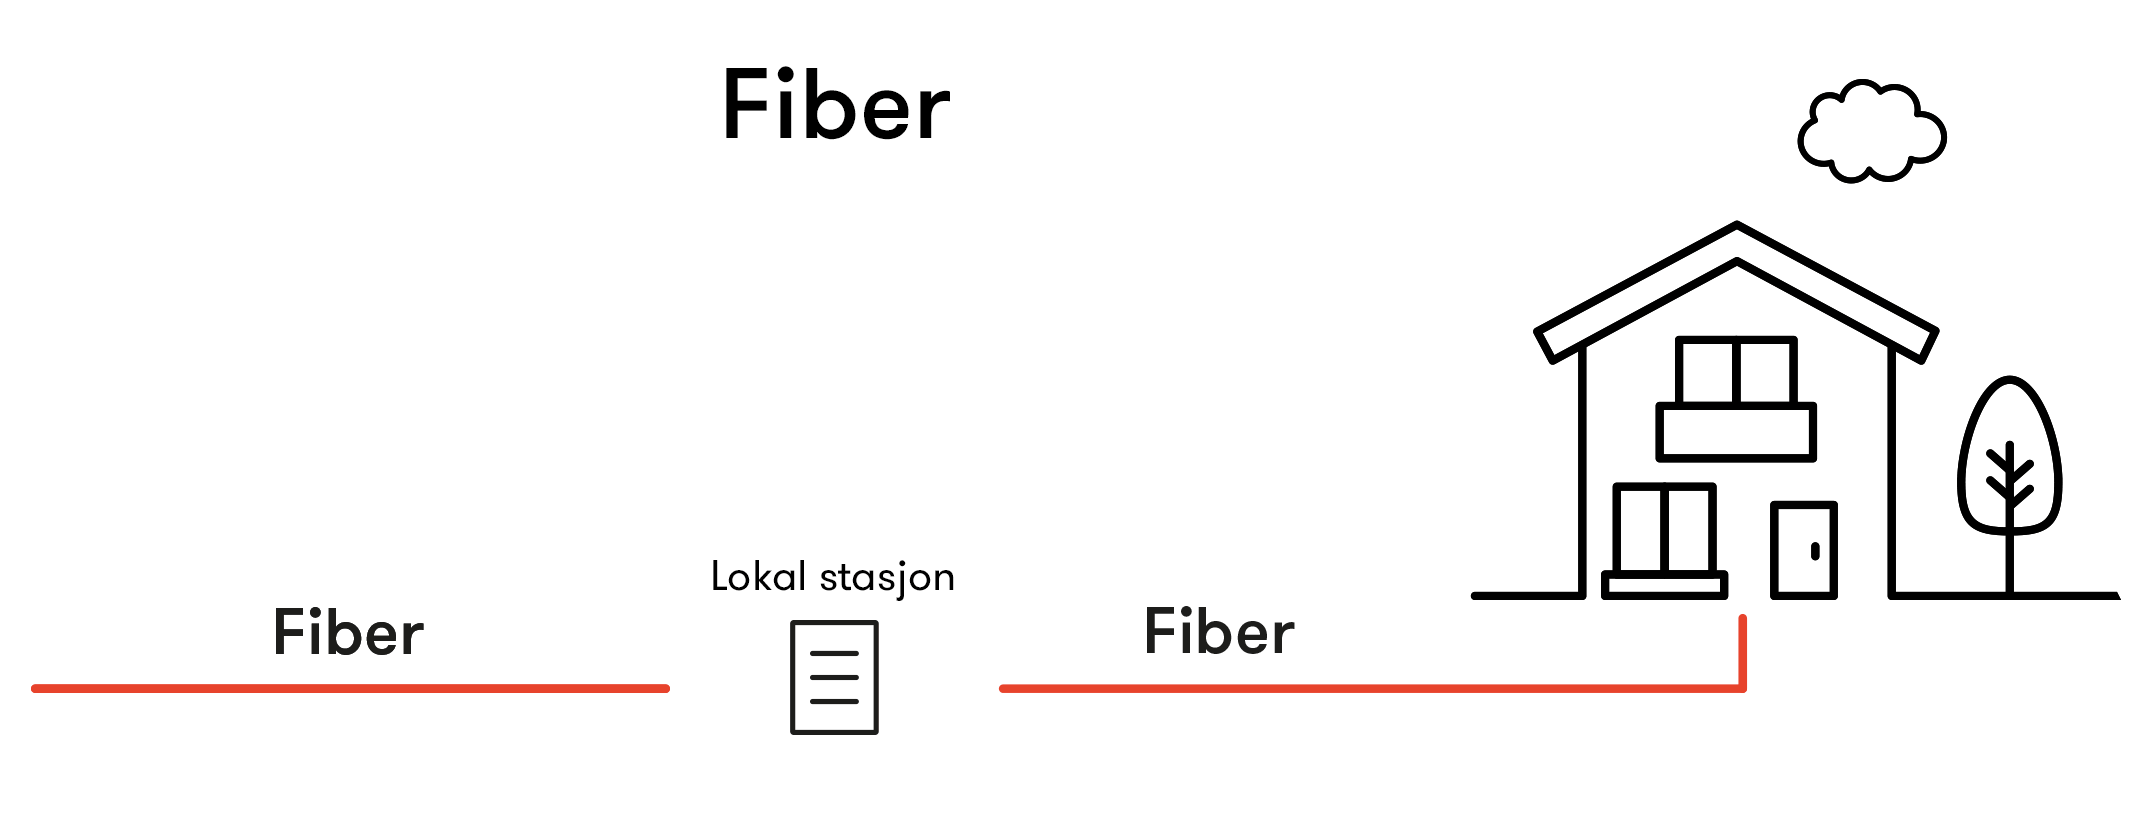 Med fiber får du internett via kabel. Med trådløst bredbånd (5G) går signalene fra en basestasjon til veggmonterte antennebokser. Hybridfiber får man når fiberkabelen kobles til en eksisterende kobberkabel 👇